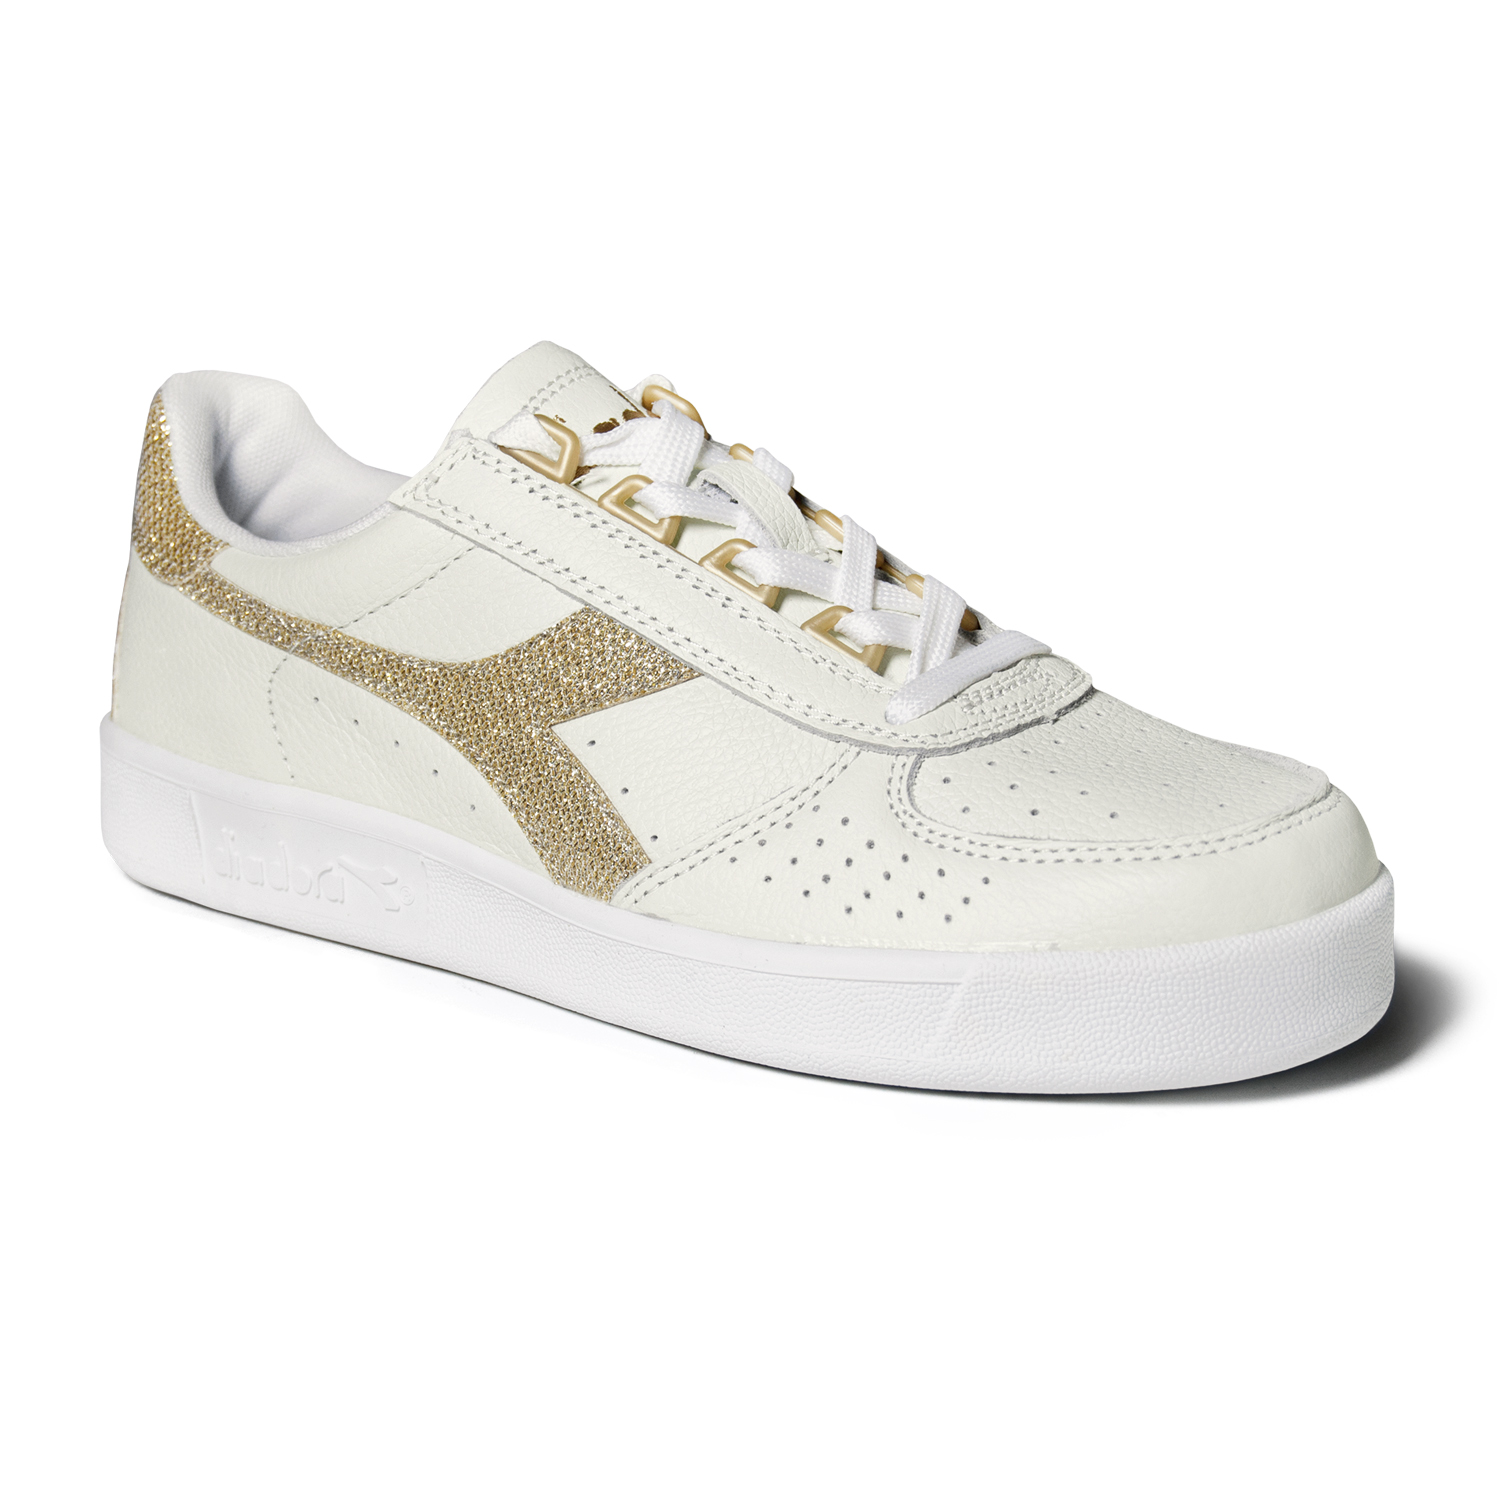 Scarpe Sneakers Donna DIADORA Modello B.Elite White Gold | eBay